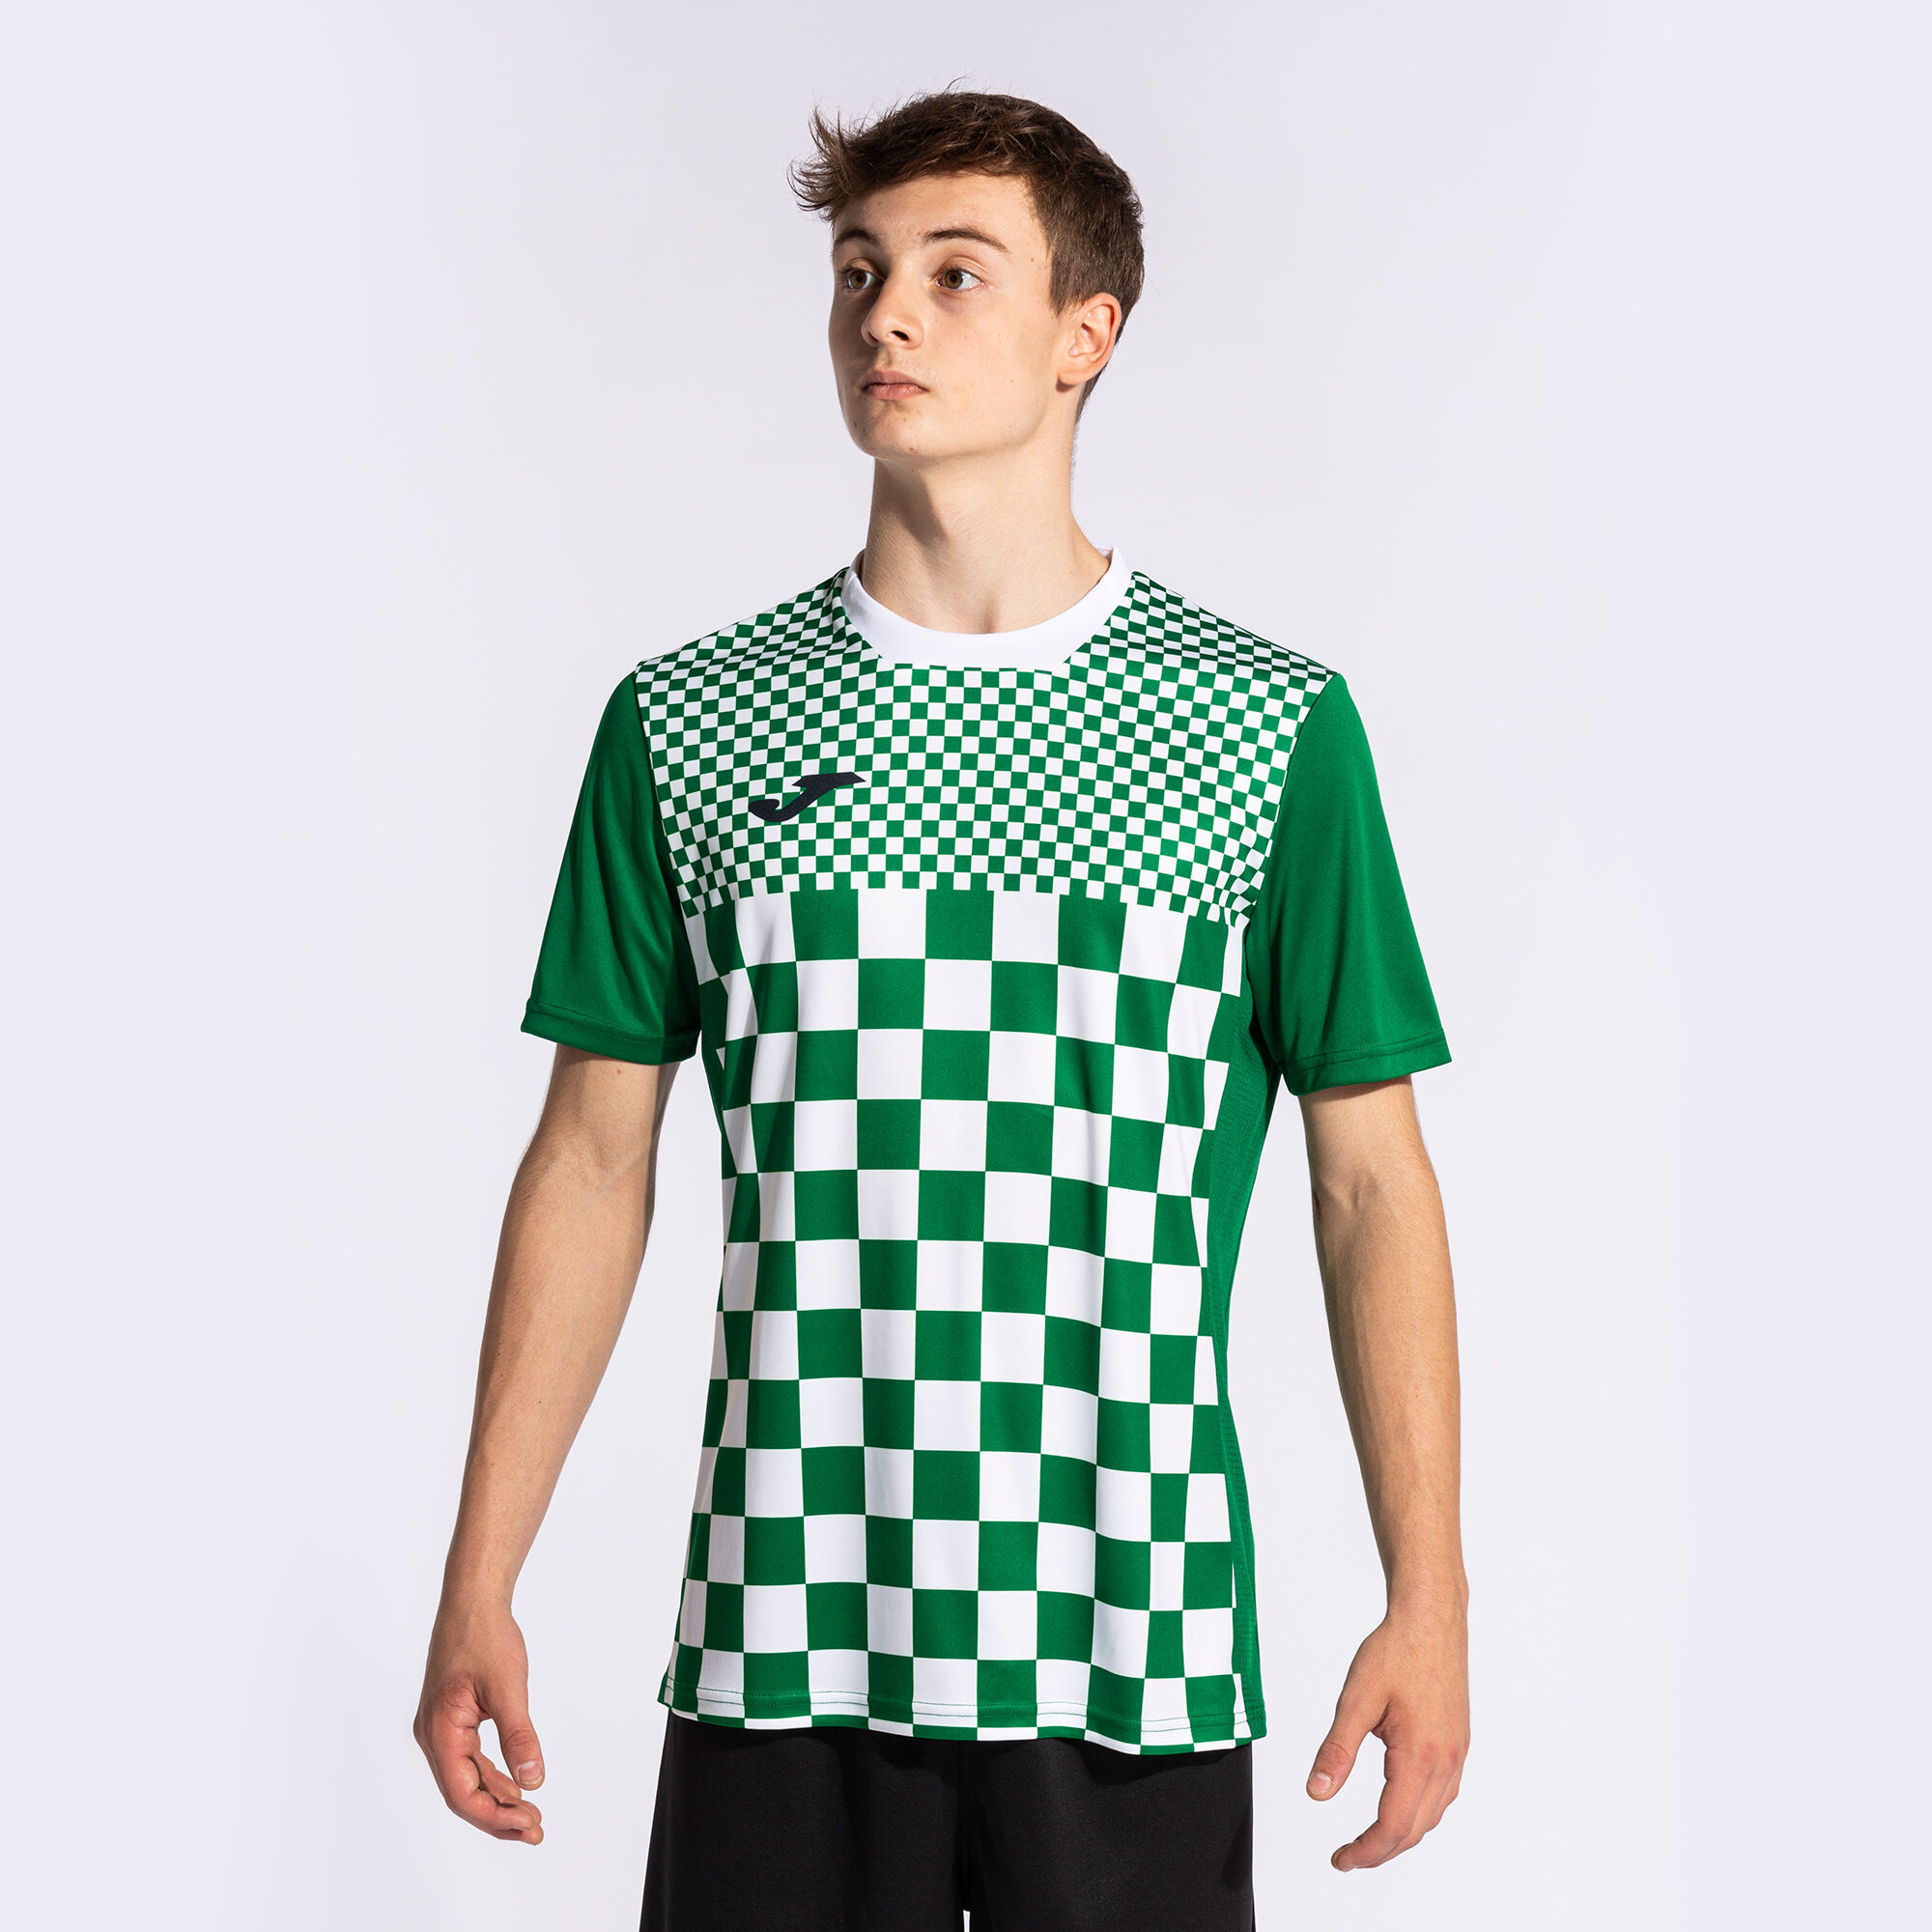 Camiseta Joma Flag III - Camisetas de entrenamiento - Ropa de fútbol